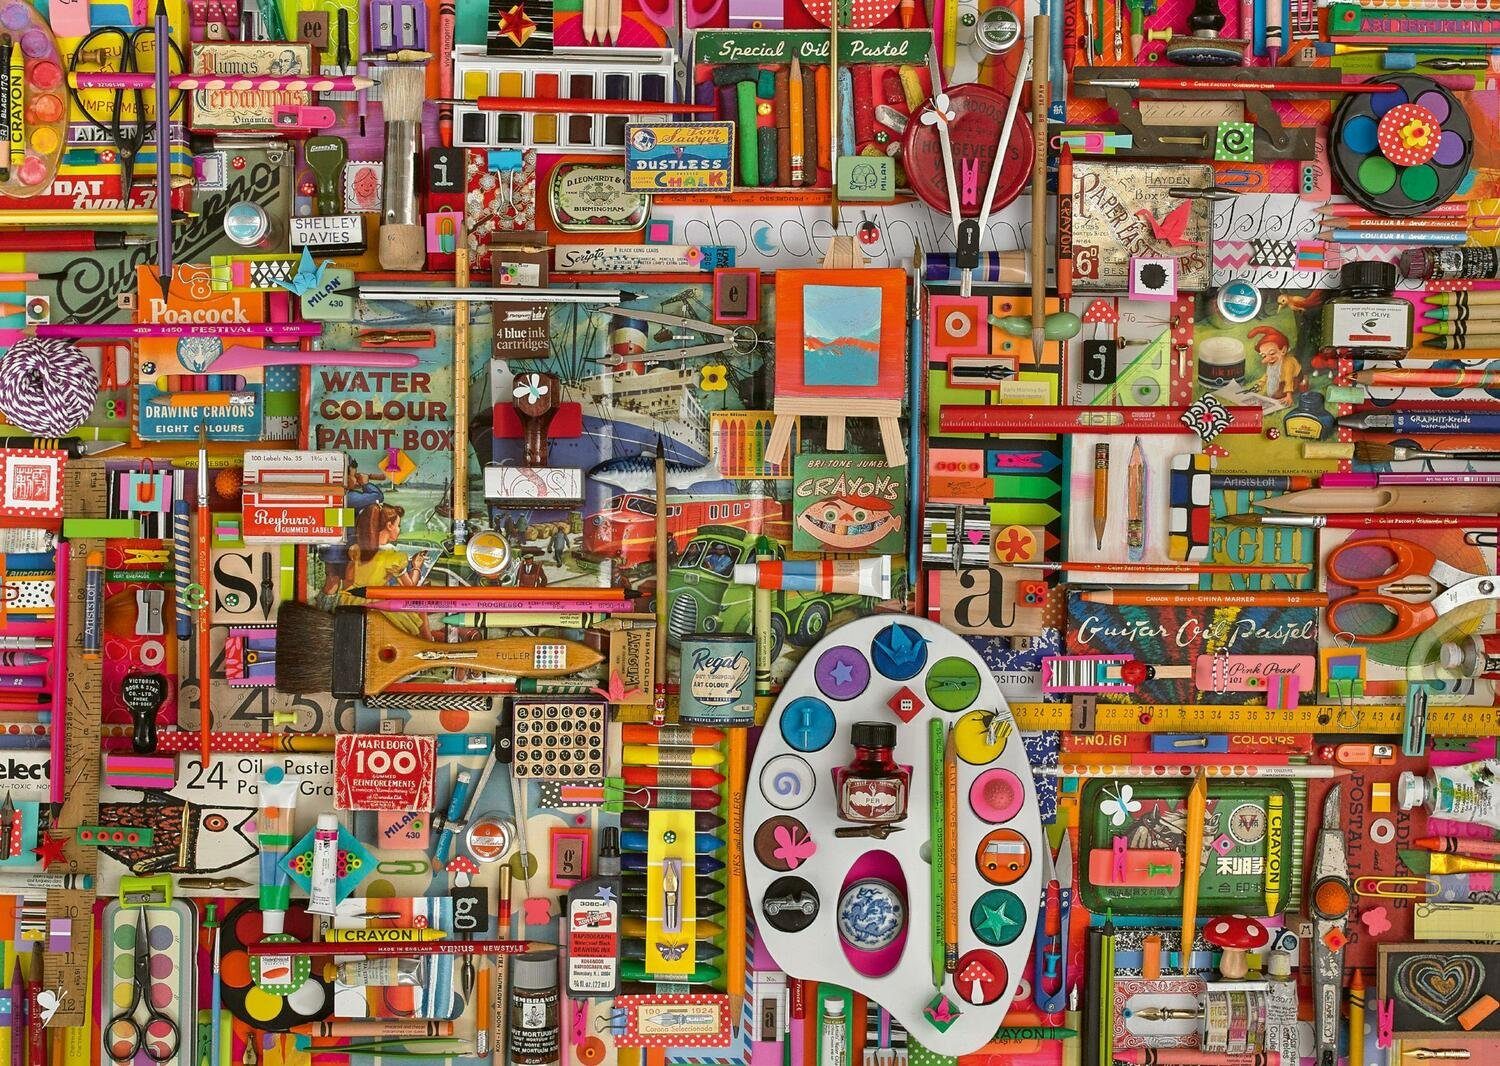 Puzzle Puzzle Künstlermaterialien 1.000 Vintage 1000 Puzzleteile Schmidt Spiele Teile,